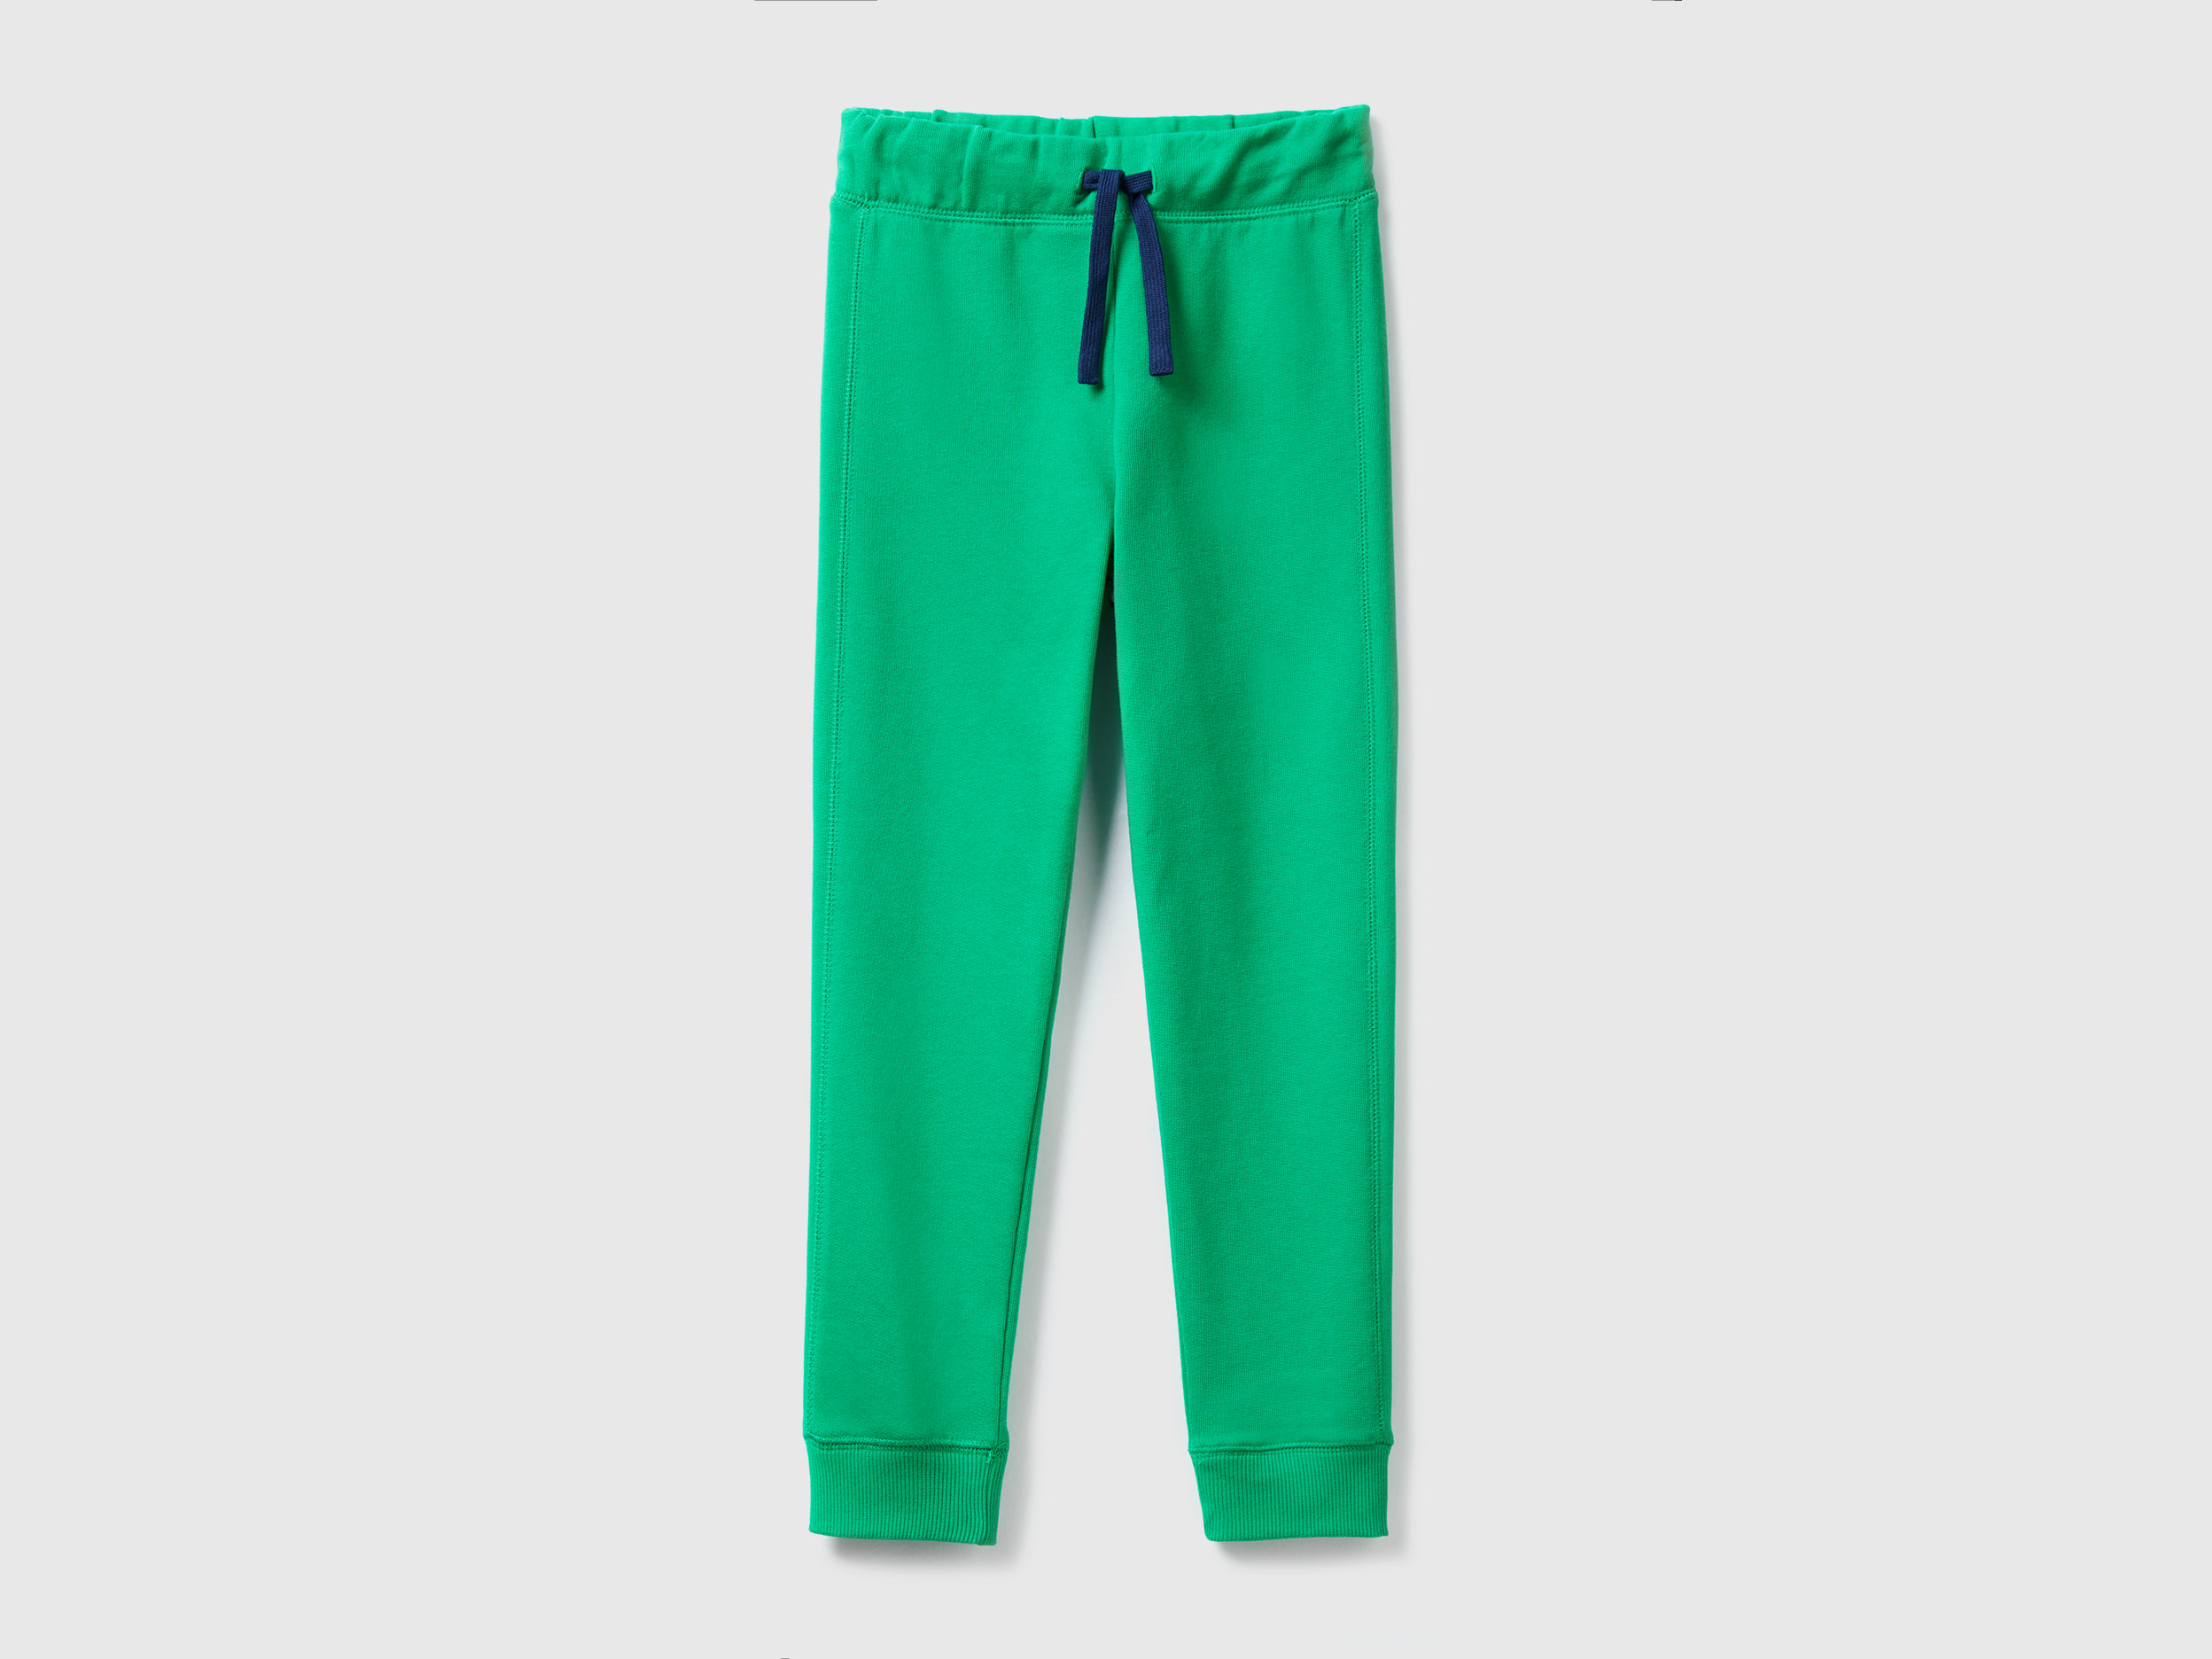 Benetton, 100% Cotton Sweatpants, size L, Green, Kids